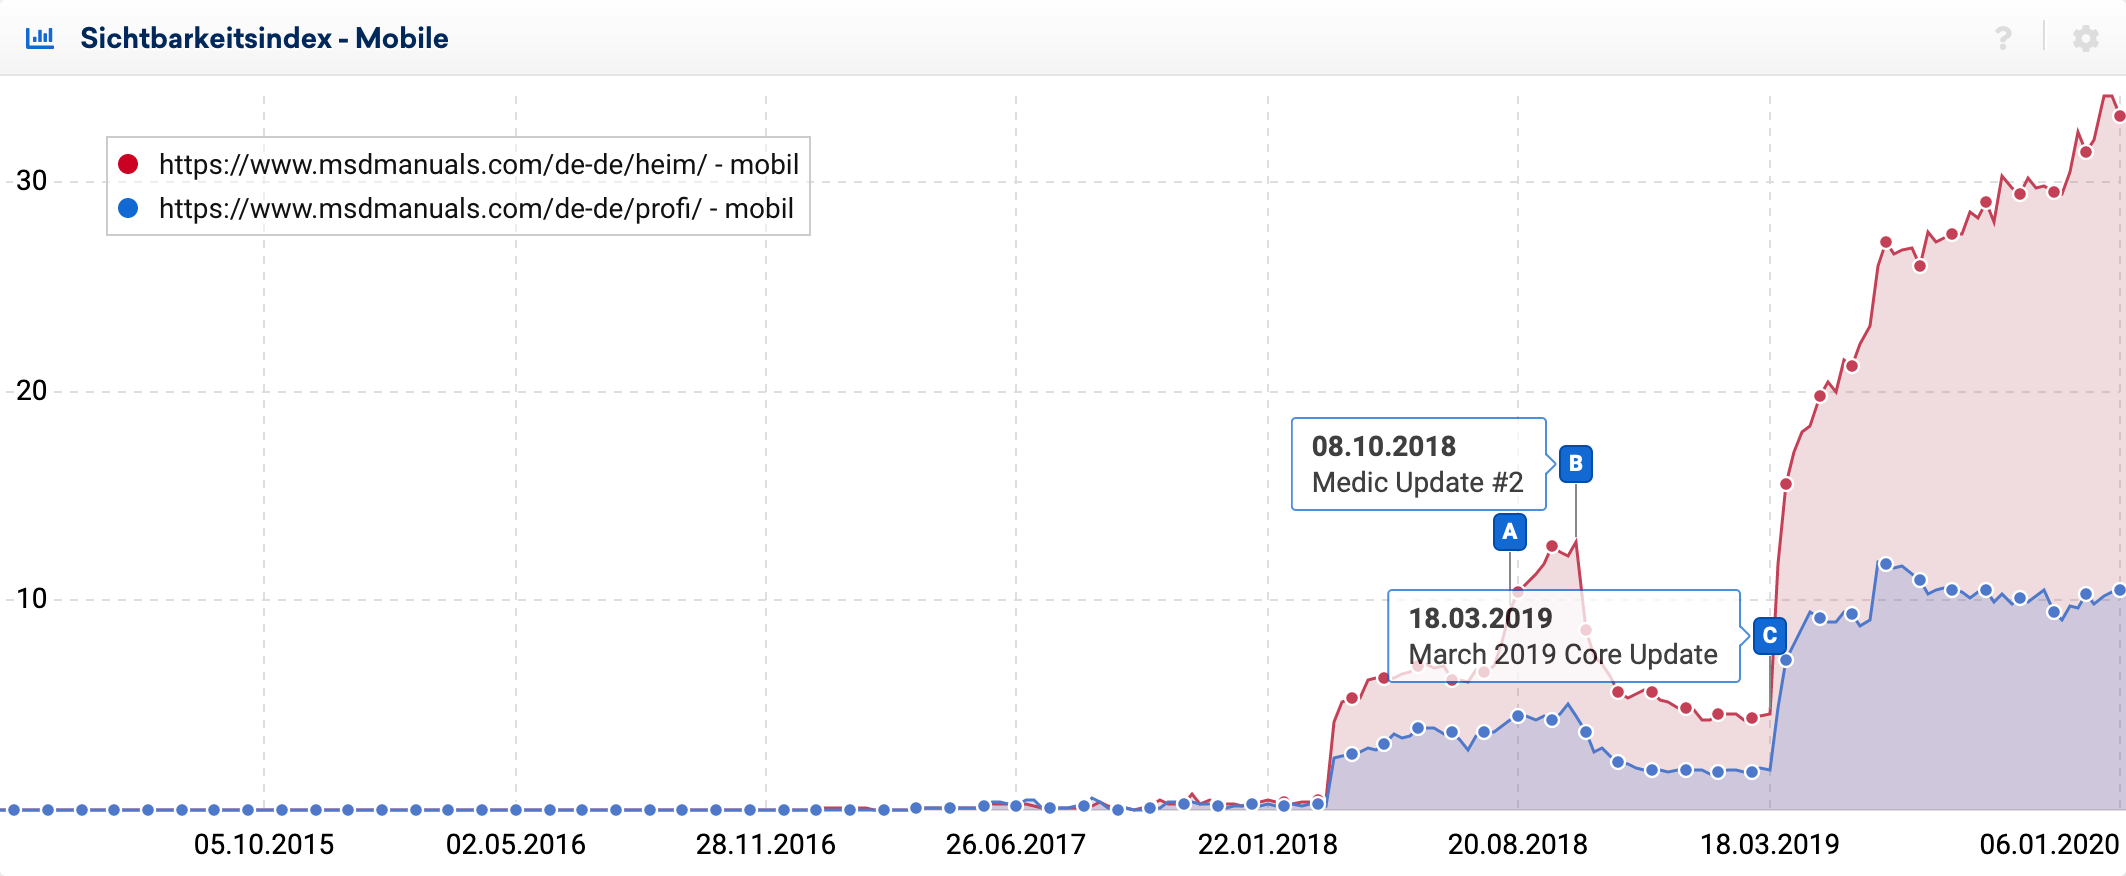 Mobiler Sichtbarkeitsverläufe der beiden Verzeichnisse /heim/ und /profi/ auf msdmanuals.com für Deutschland. Bei beiden zeigt sich ein Verlust zum Medich Update #2 und ein Gewinn beim March 2019 Core Update. /heim/ macht 75% der Sichbarkeit der Domain aus und /profi/ die restlichen 25%.